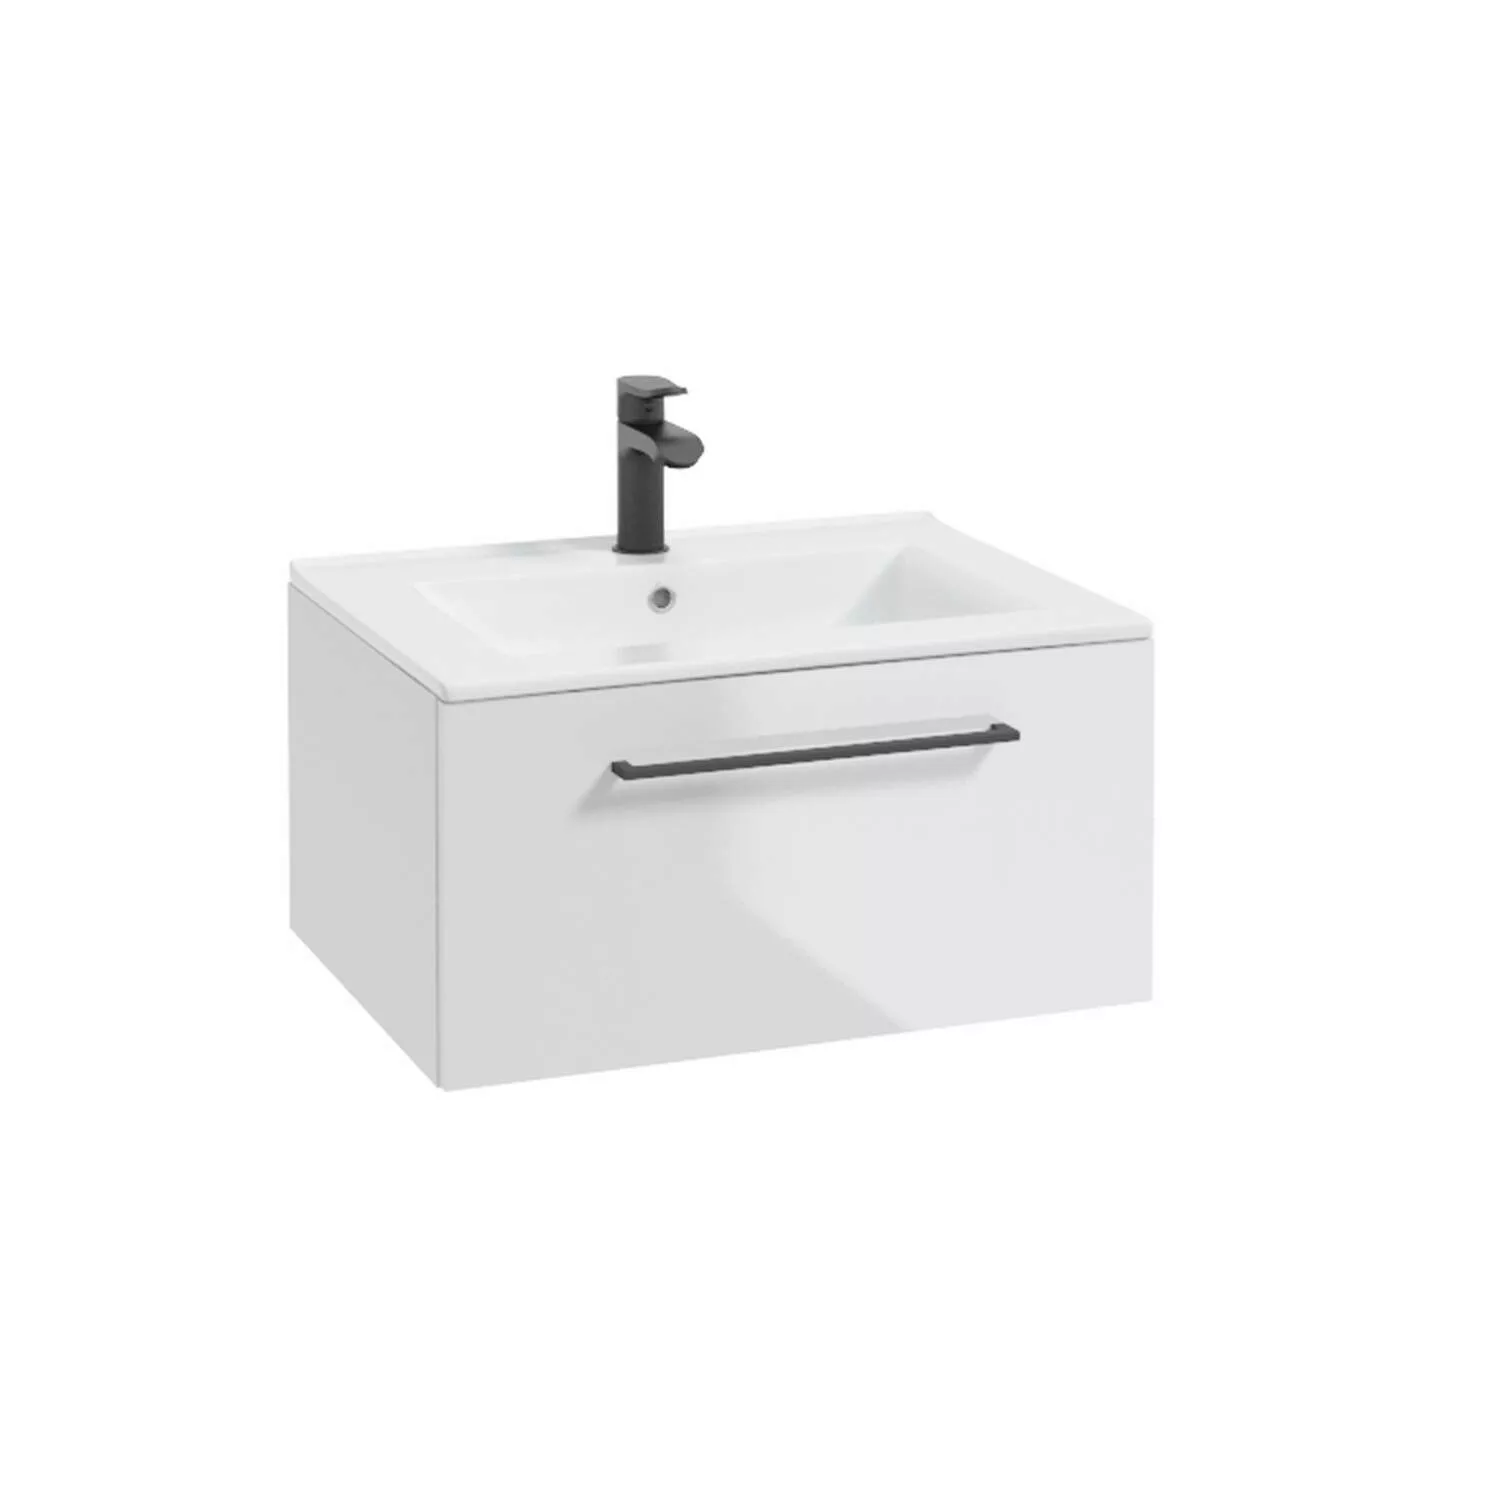 Badezimmer Waschtisch in weiß Hochglanz lackiert mit Metallgriff in schwarz günstig online kaufen